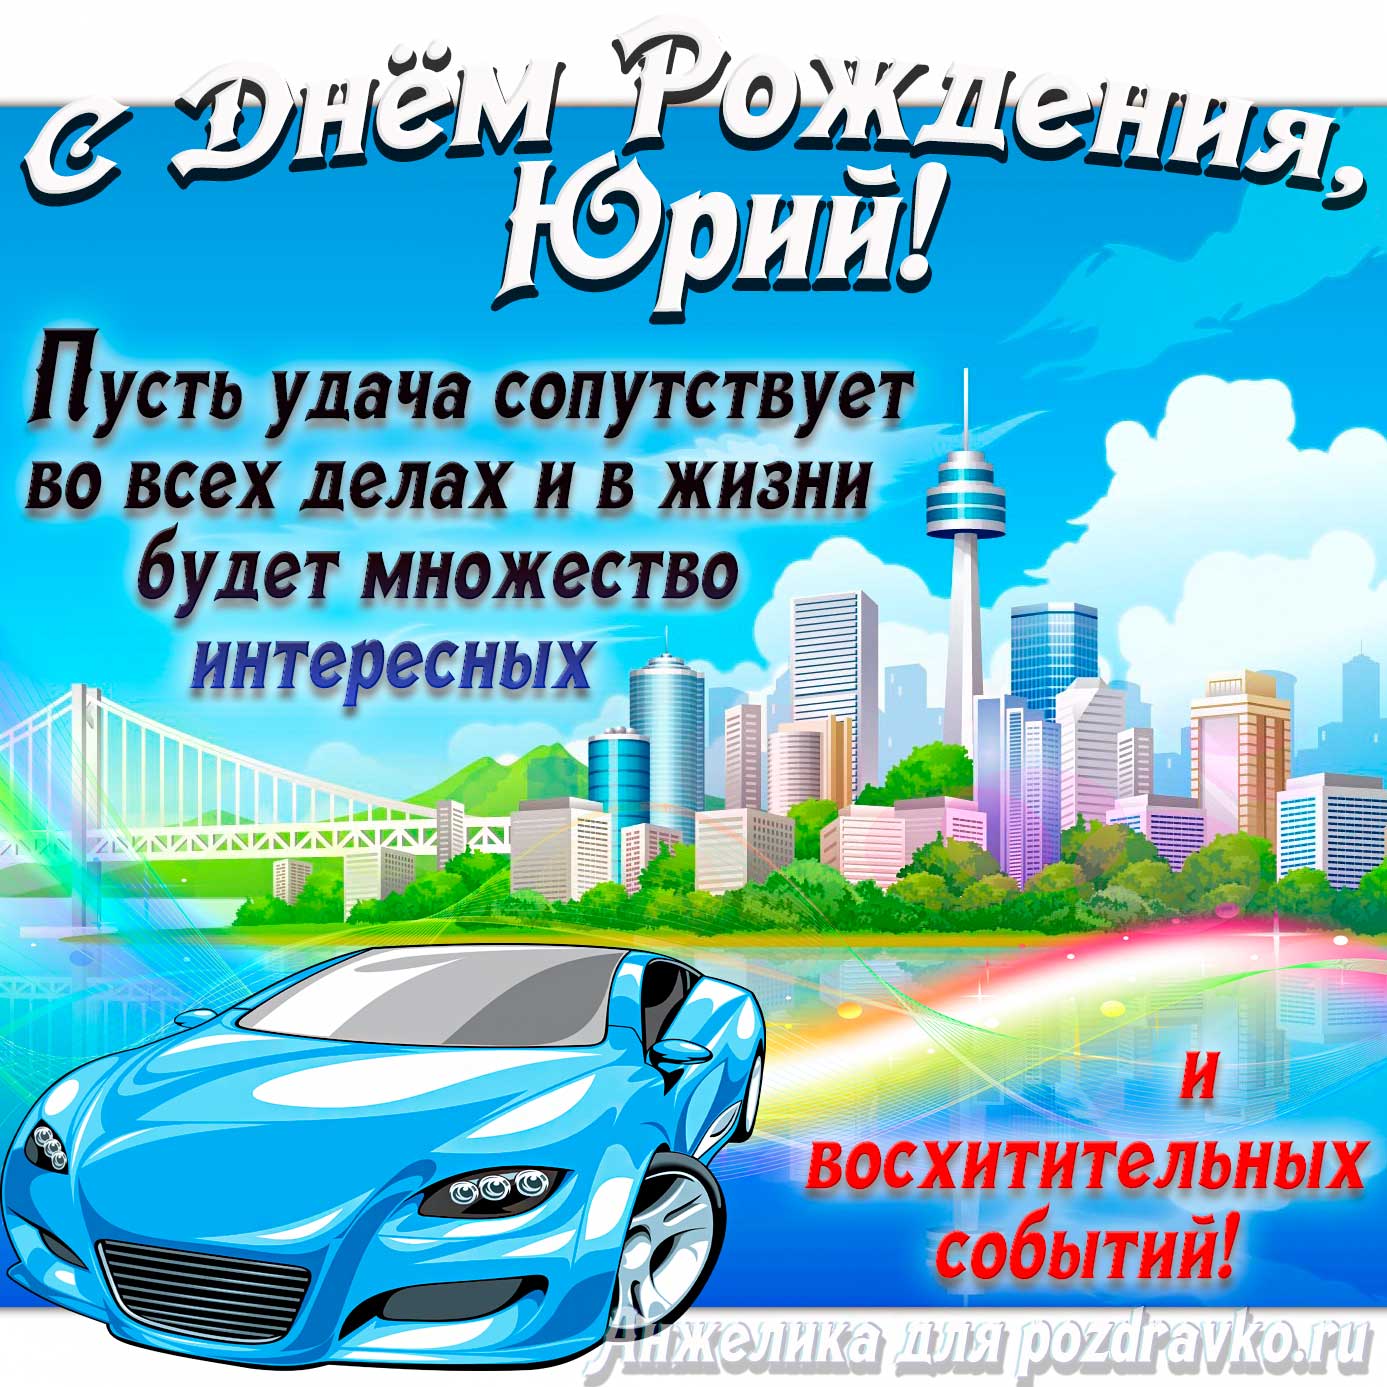 Открытка - с Днём Рождения Юрий с голубой машиной и пожеланием. Скачать бесплатно или отправить картинку.